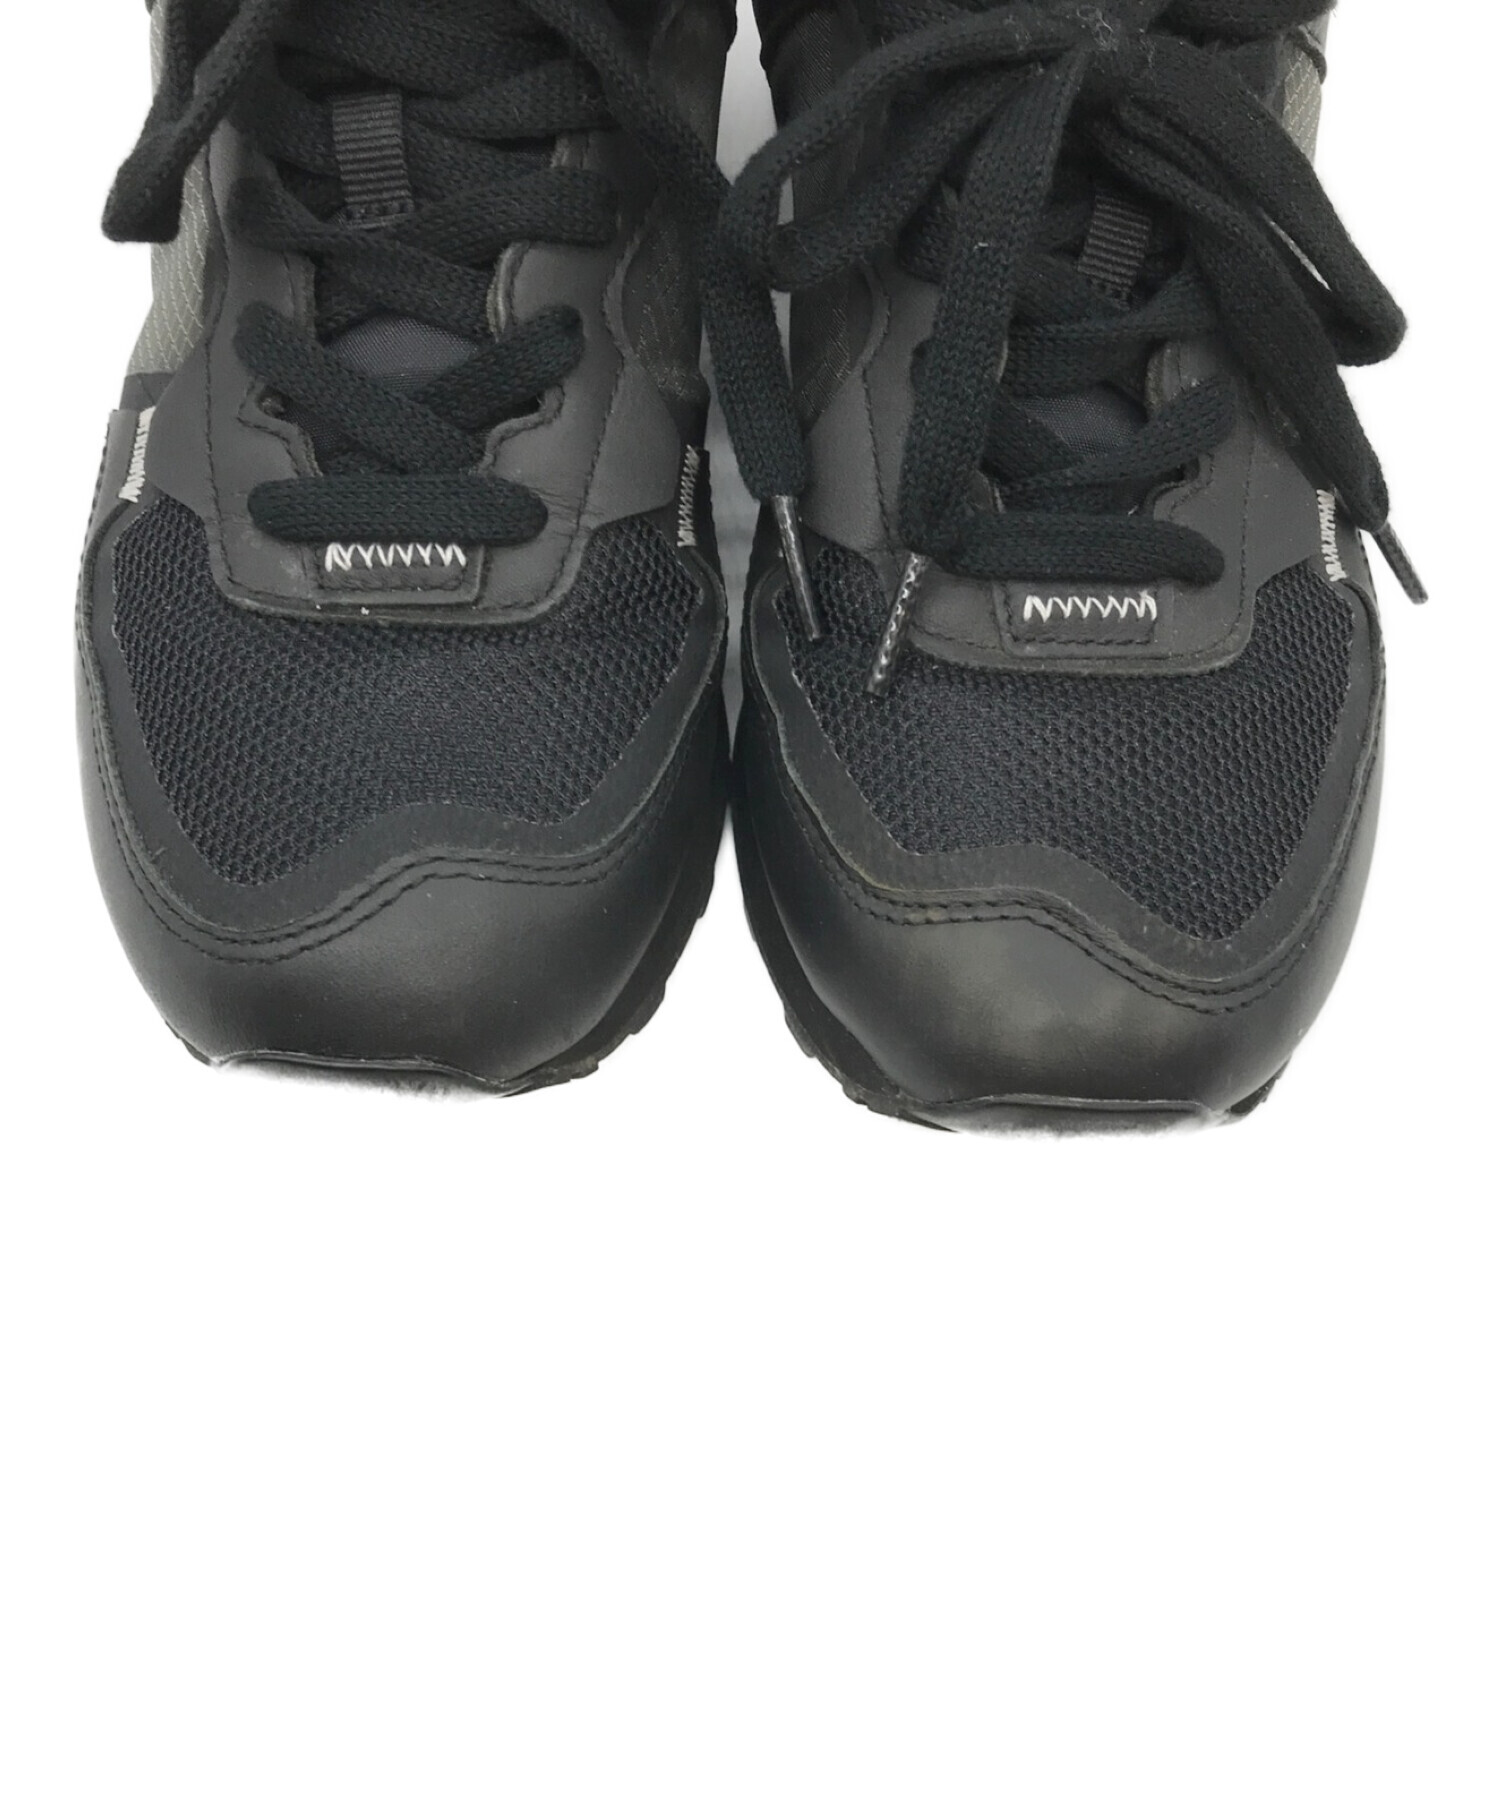 COMME des GARCONS コムデギャルソン サイズ:28.0cm  21SS NEW BALANCE ML574 IHM ニューバランス ブラック 黒 US10 D ローカット スニーカー シューズ 靴 コラボ 【メンズ】【美品】